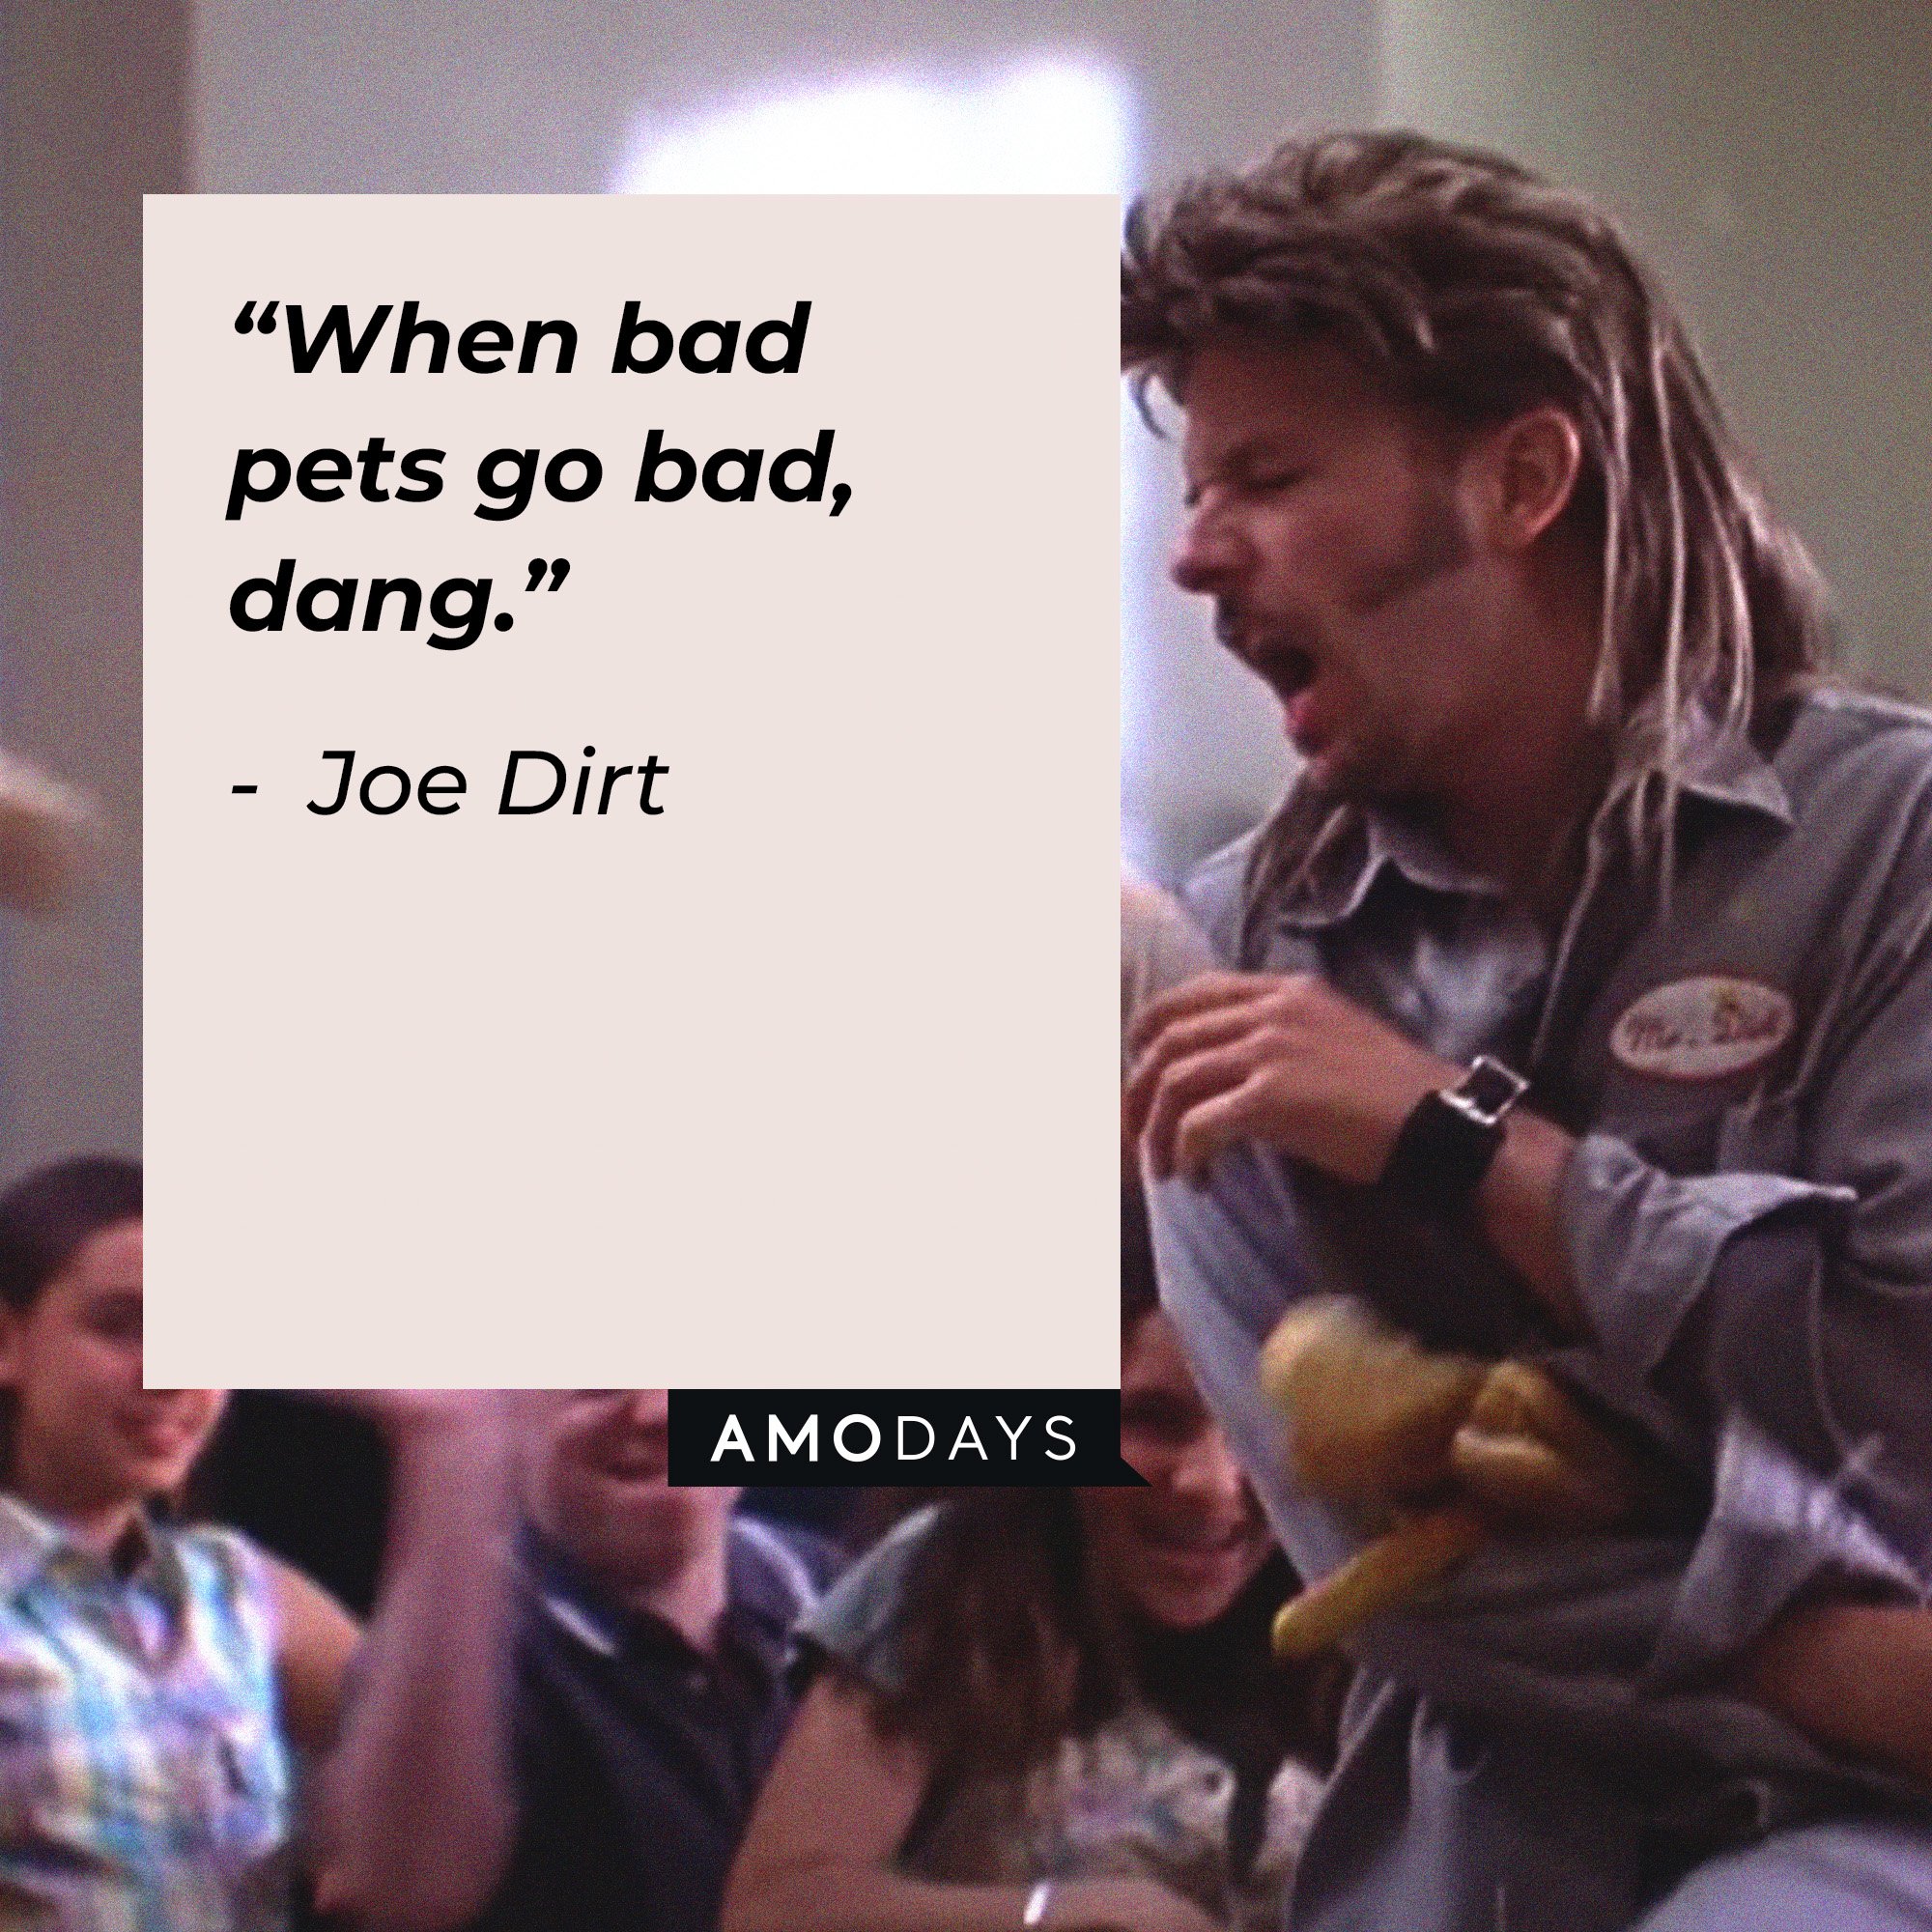 Joe Dirt's quote: “When bad pets go bad, dang.” | Image: AmoDays